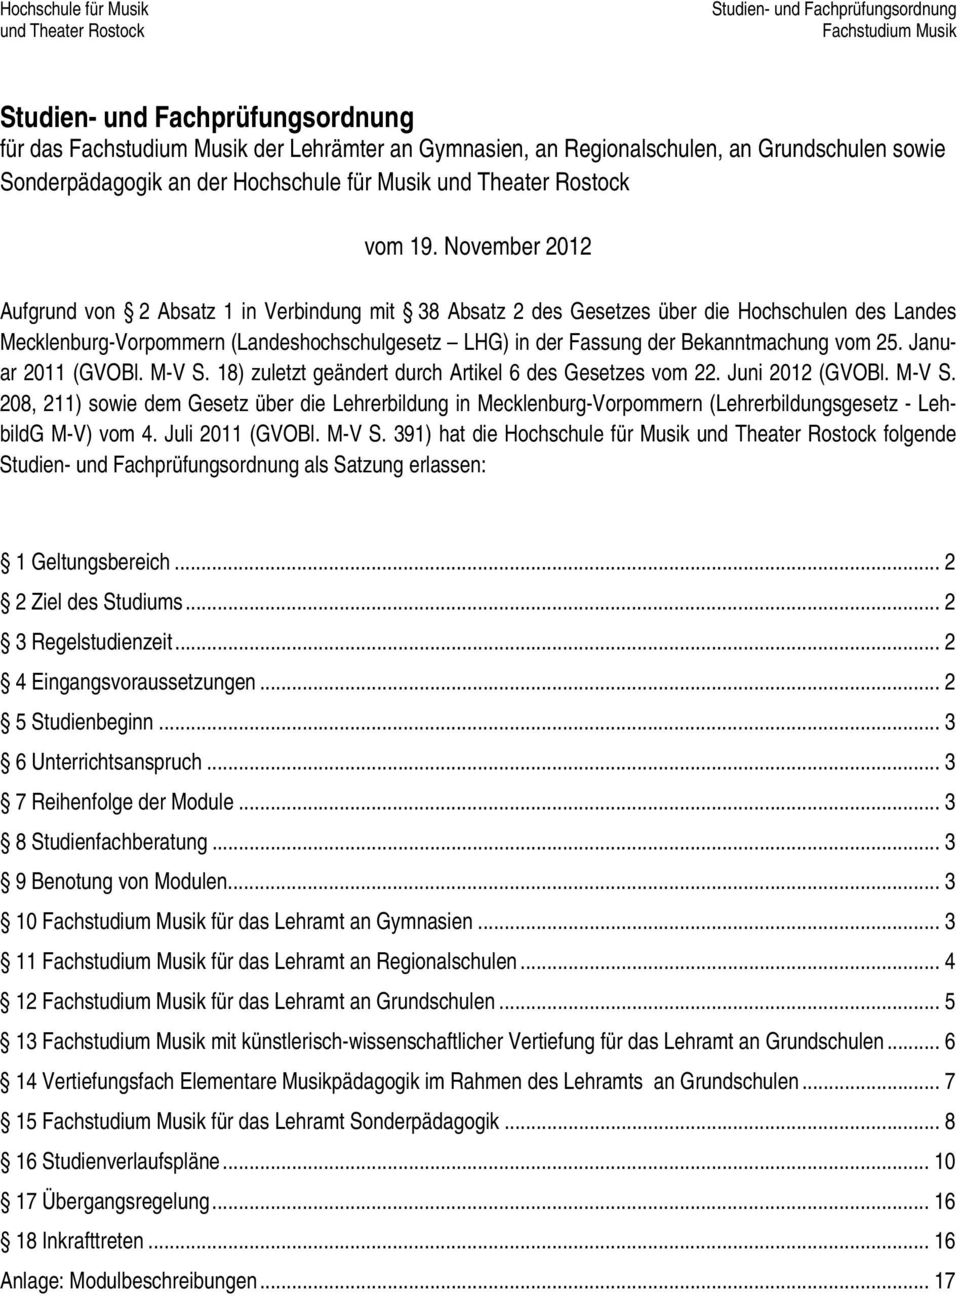 November 2012 Aufgrund von 2 Absatz 1 in Verbindung mit 38 Absatz 2 des Gesetzes über die Hochschulen des Landes Mecklenburg-Vorpommern (Landeshochschulgesetz LHG) in der Fassung der Bekanntmachung